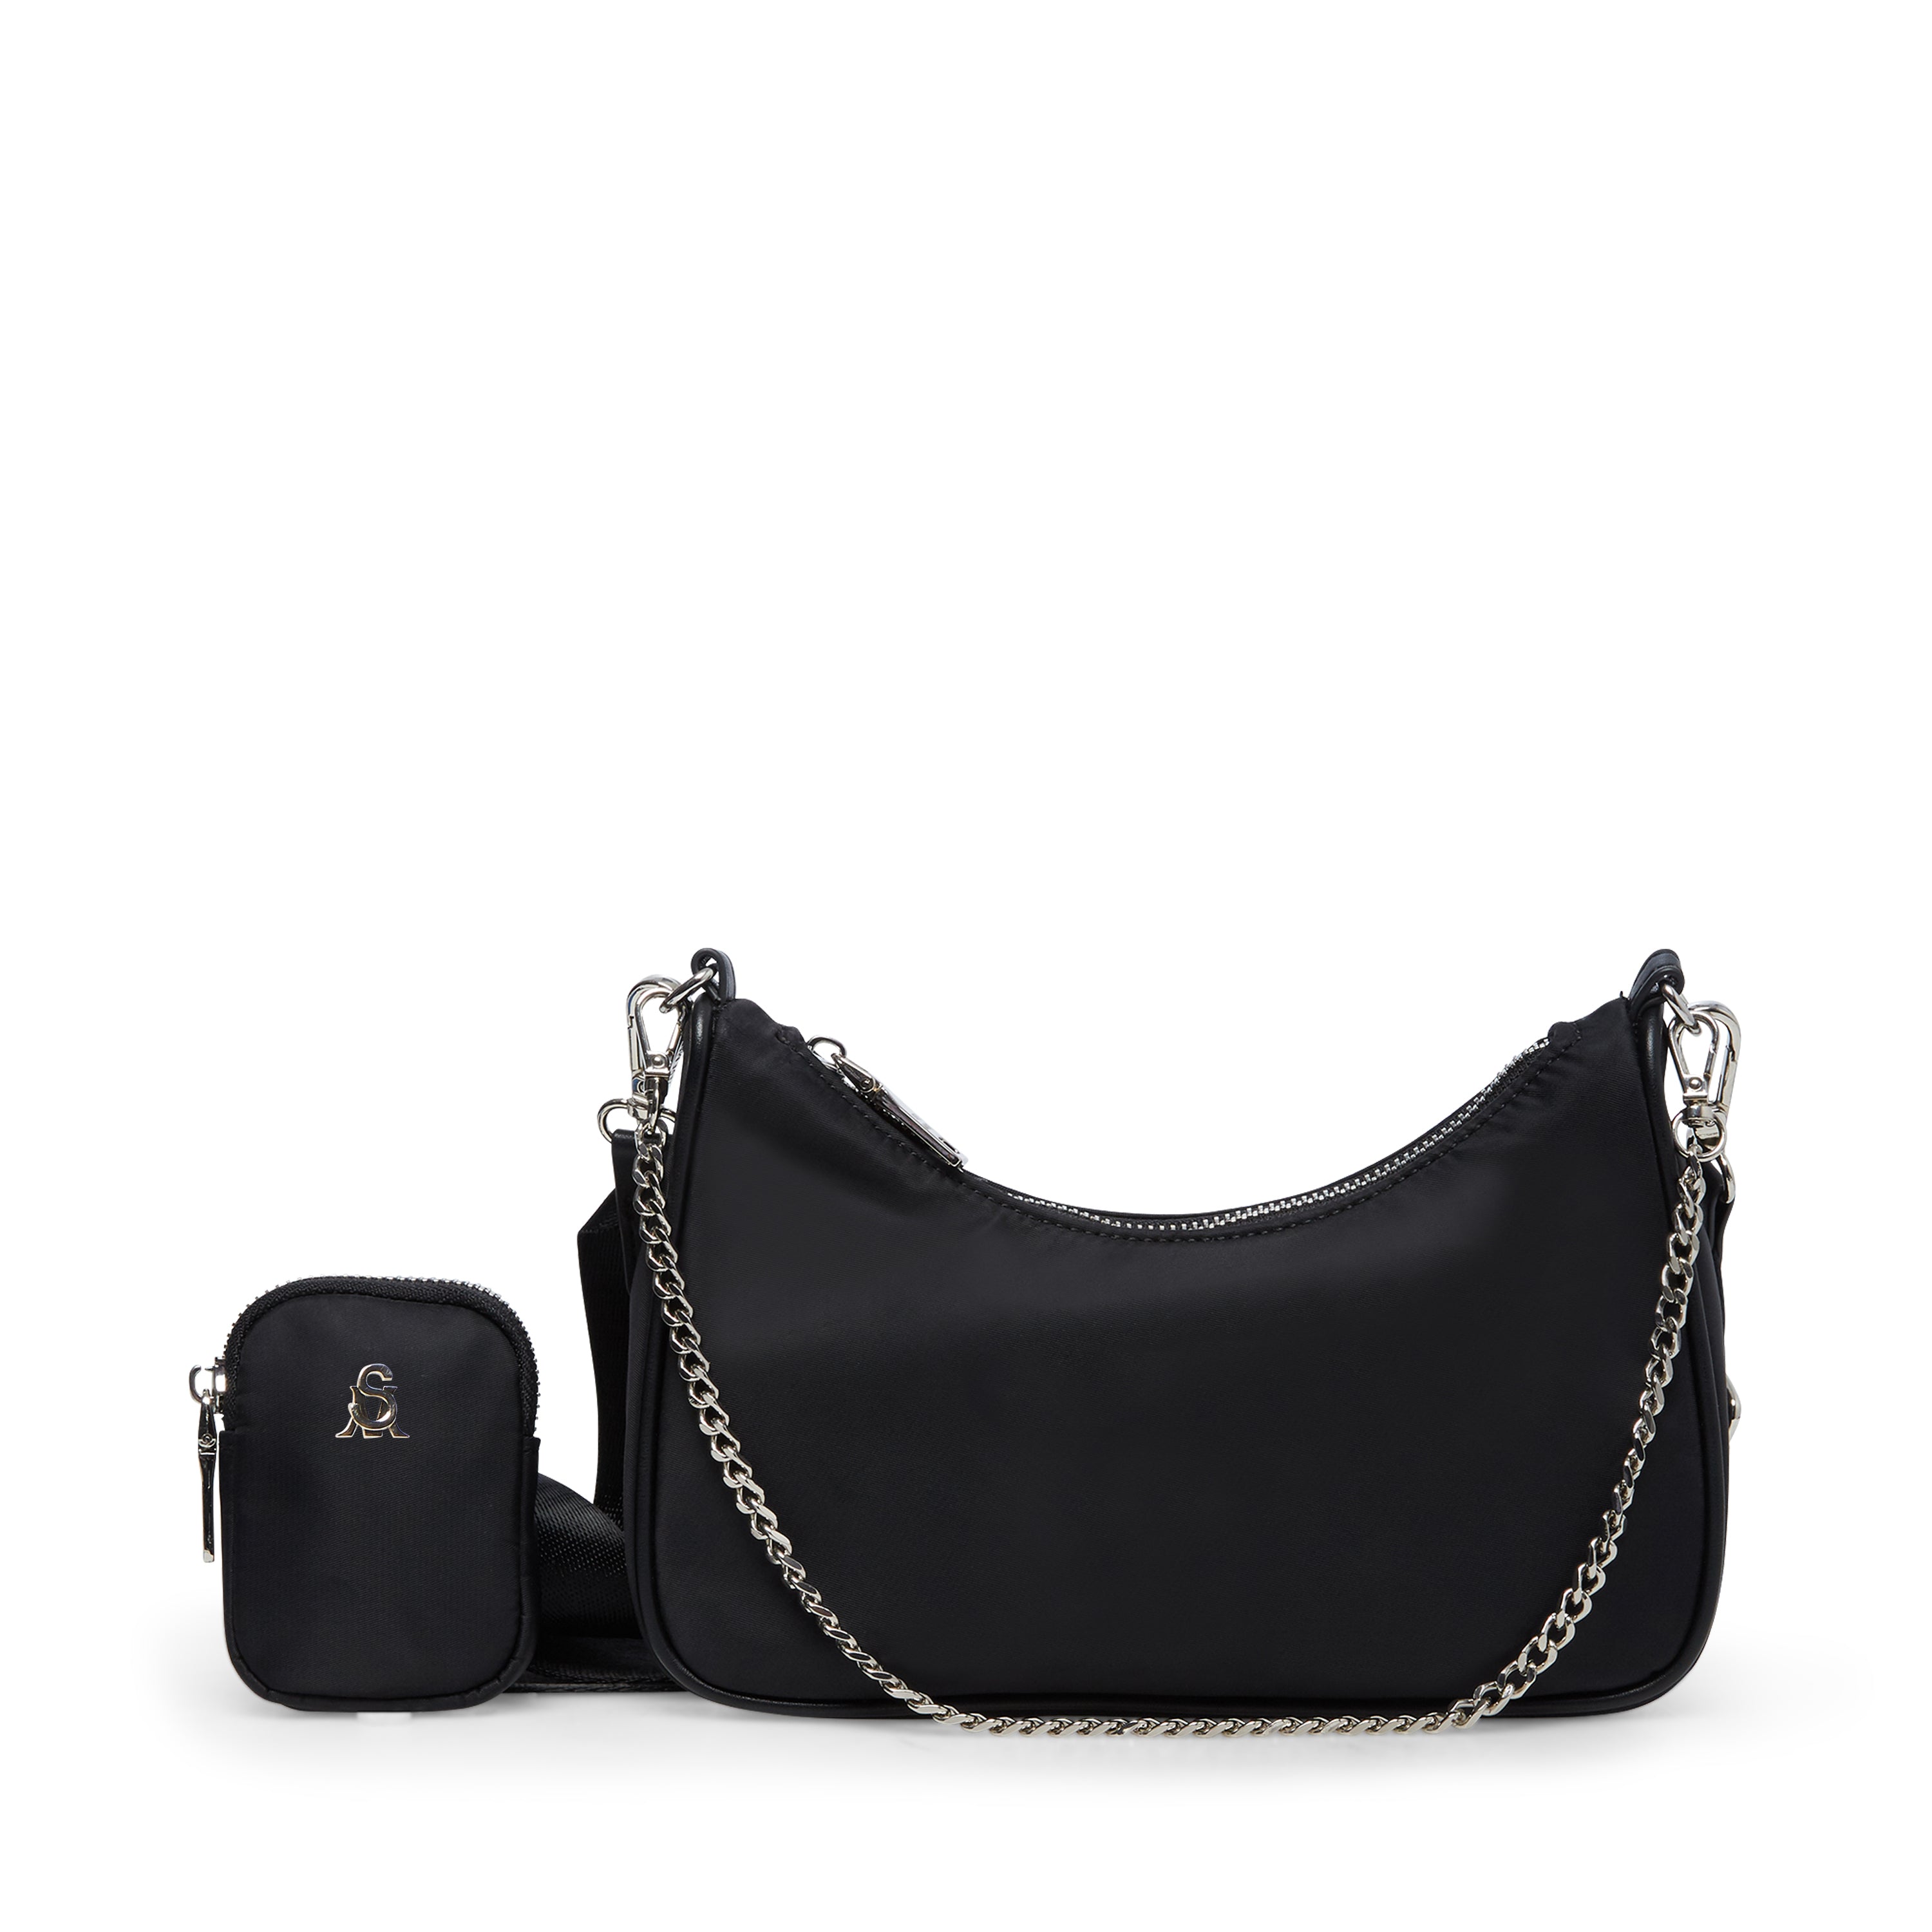 Steve Madden Handbags In Black | ModeSens